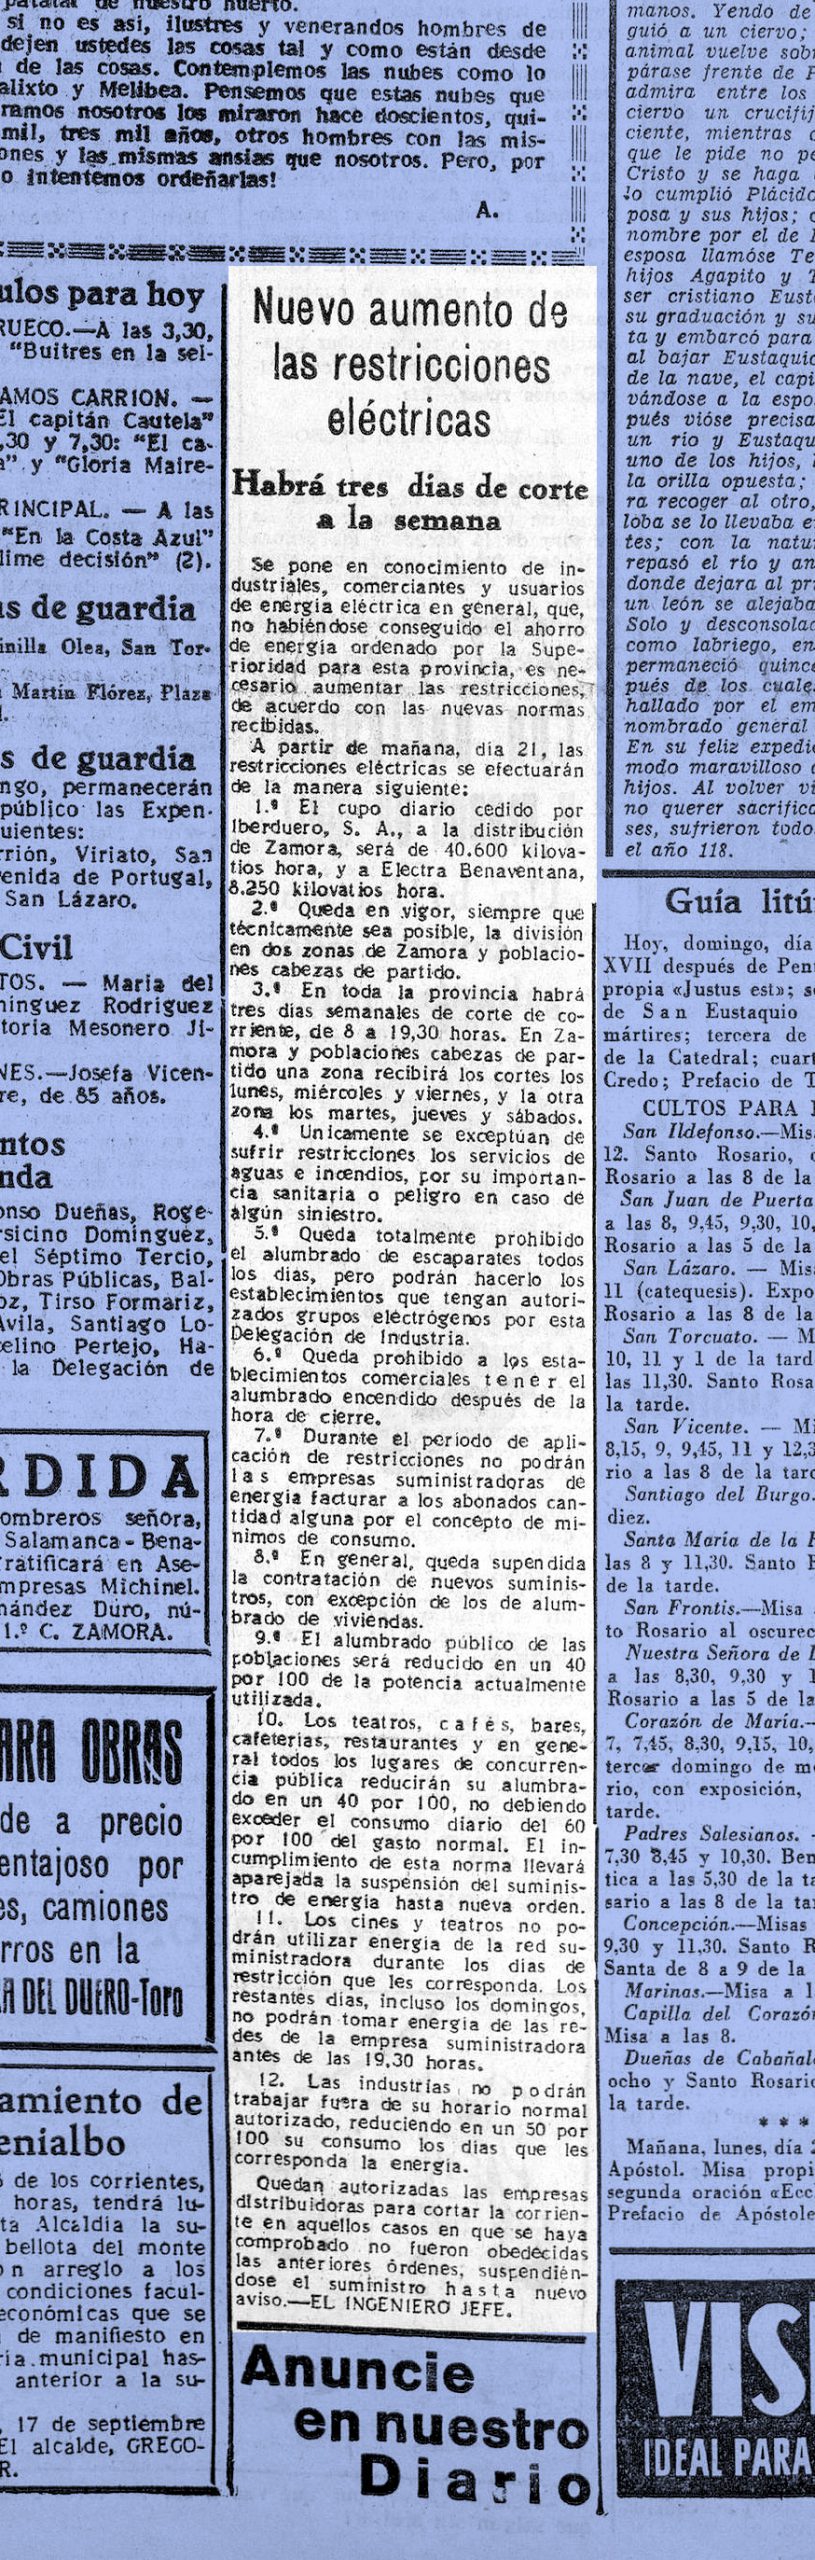 Un recorte de prensa de Imperio (Zamora), 20 de septiembre de 1953.